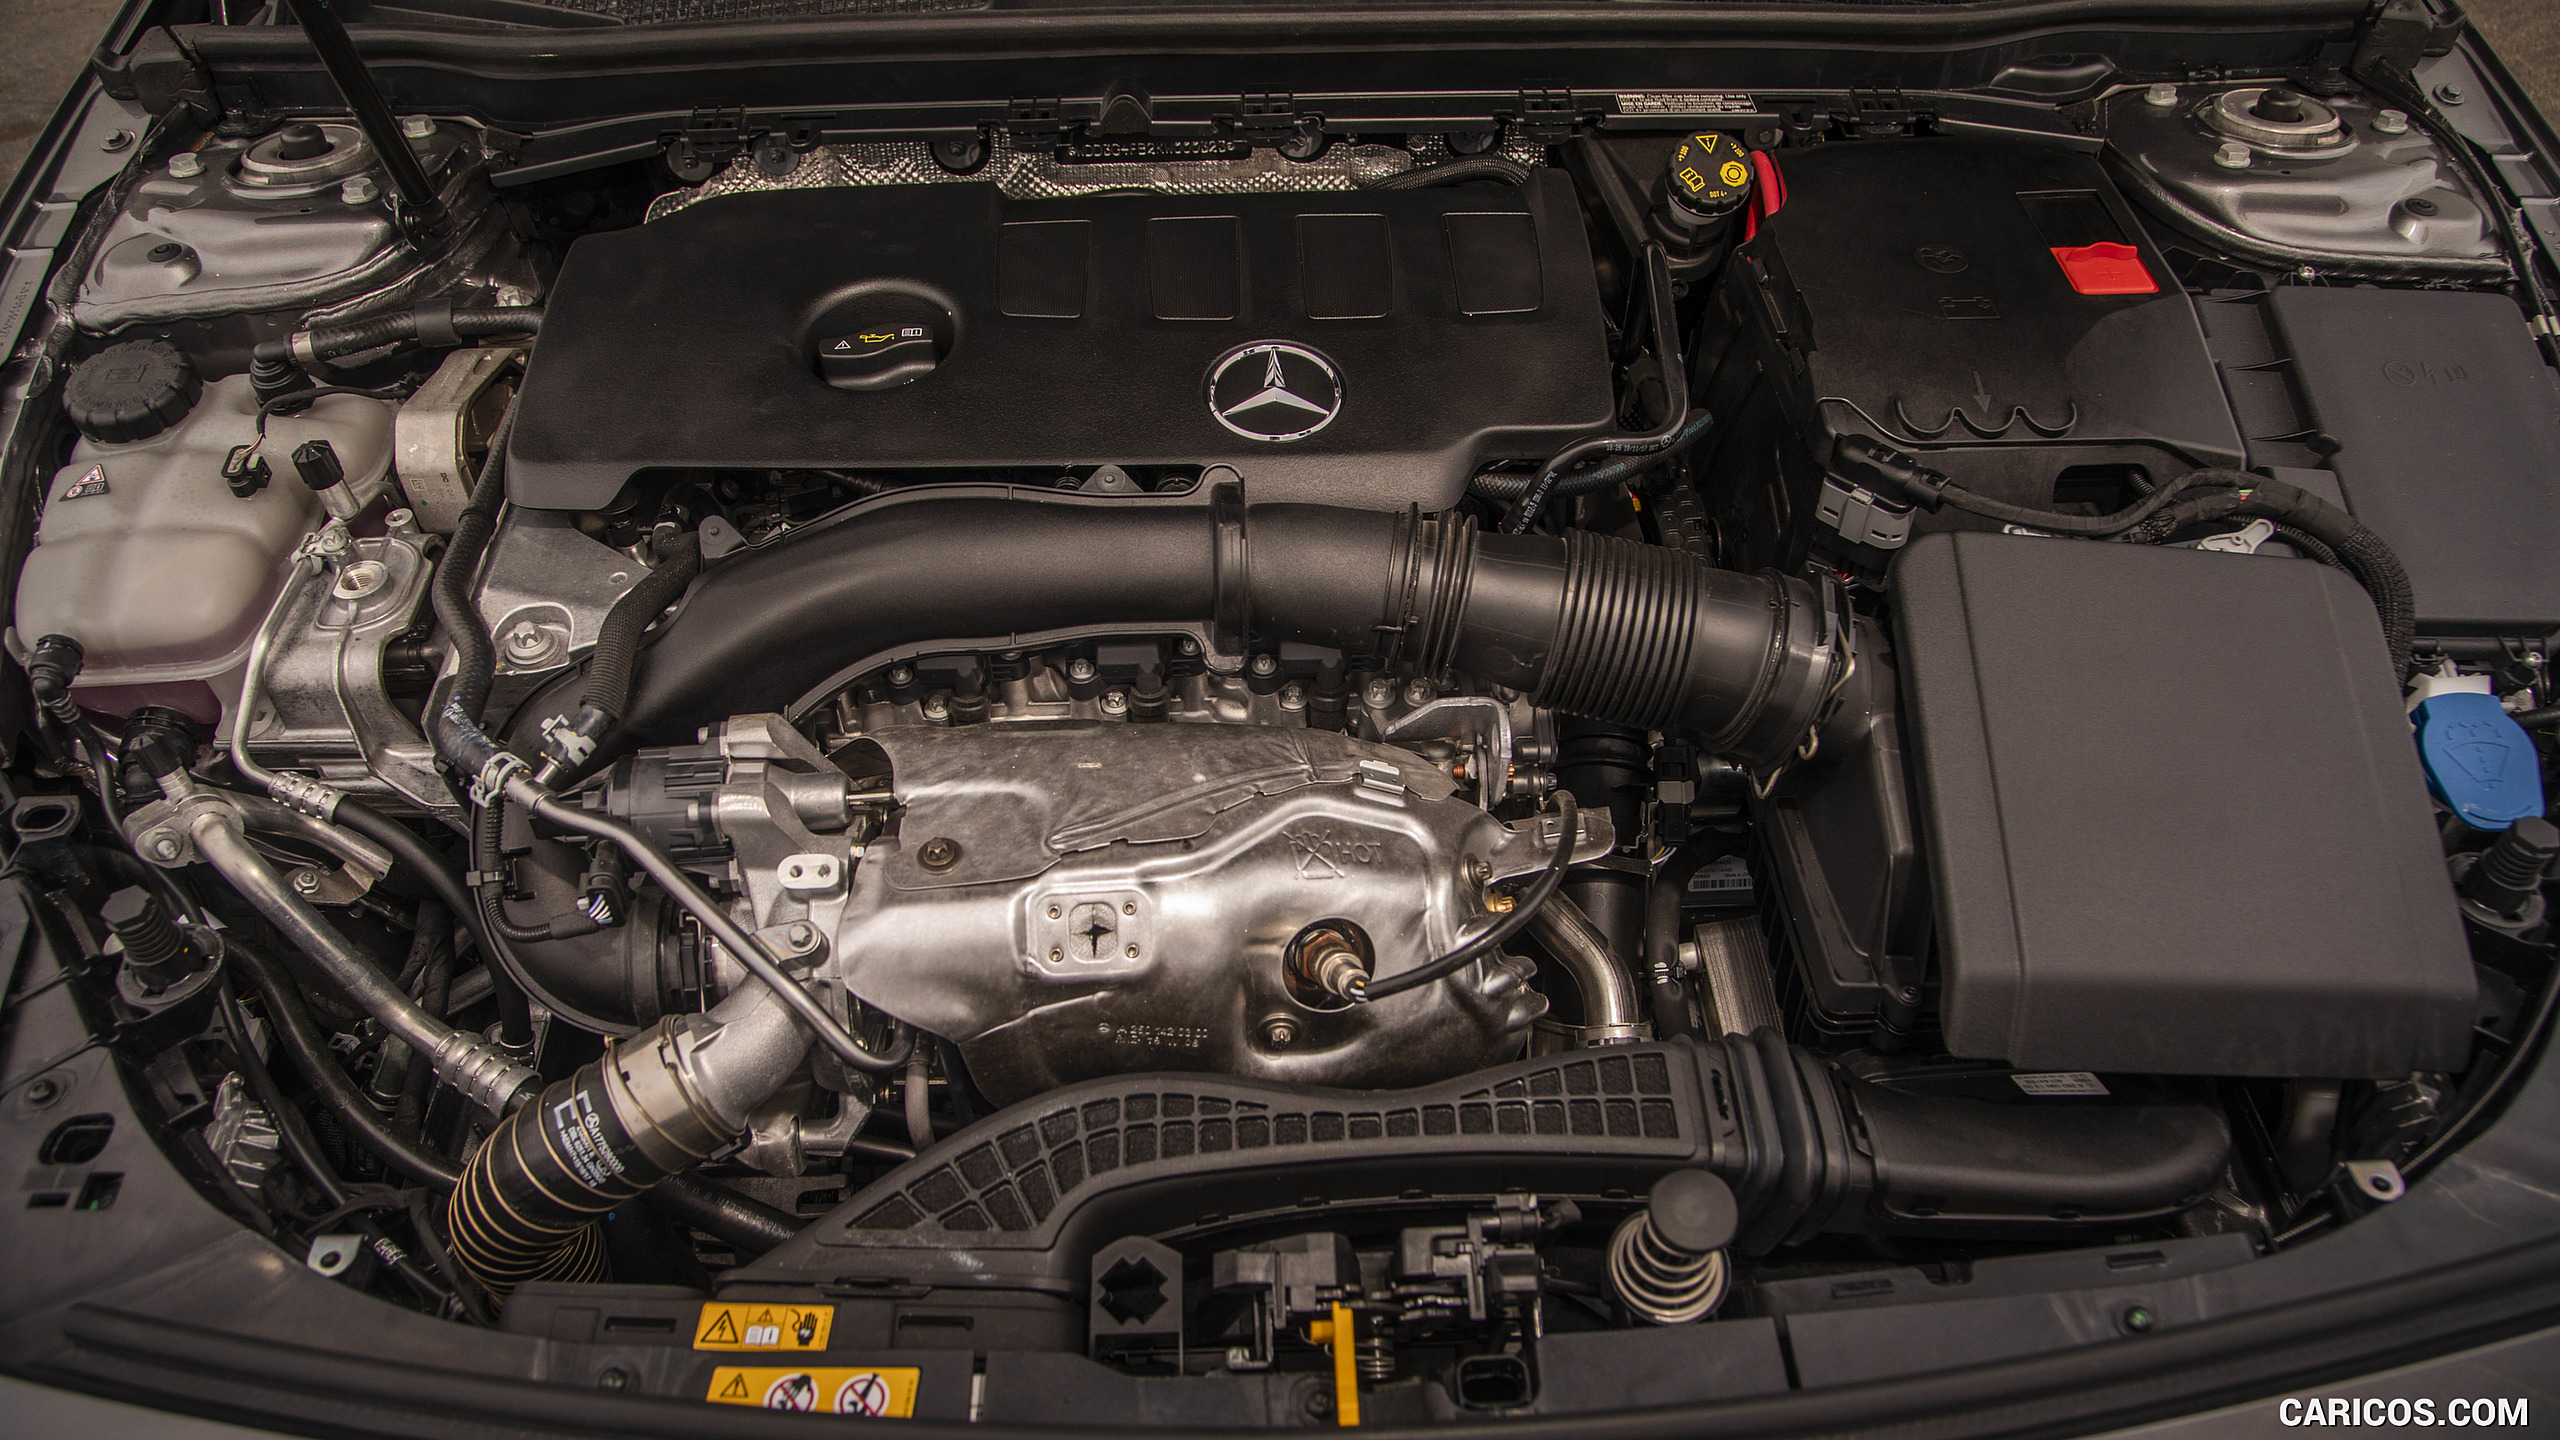 2019 Mercedes-Benz A220 4MATIC Sedan (US-Spec) - Engine, #87 of 214